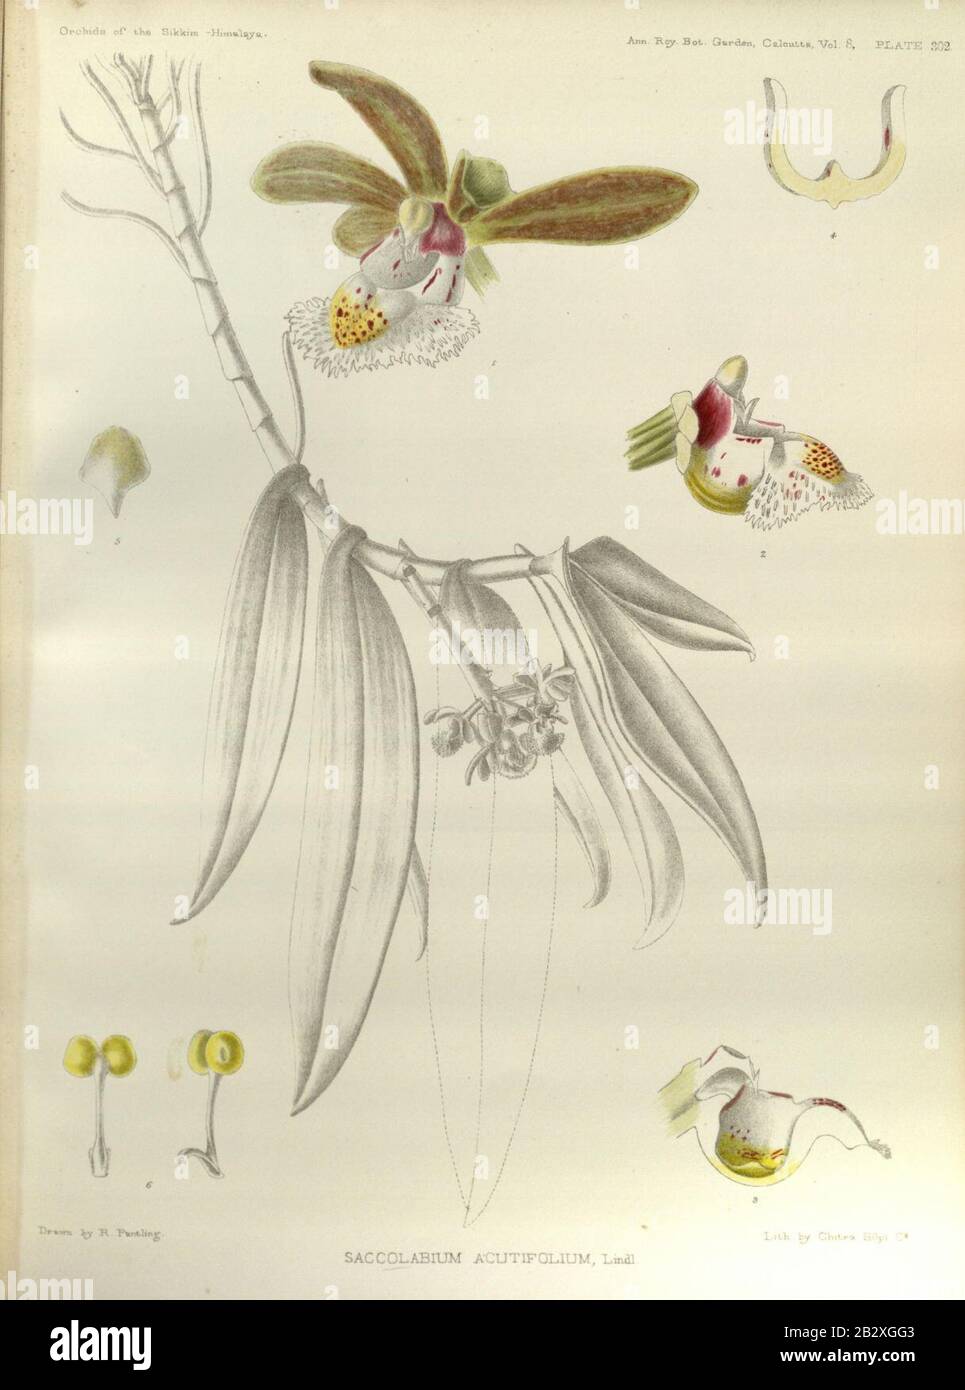 Gastrochilus acutifolius (as Saccolabium acutifolium) - The Orchids of the Sikkim-Himalaya pl 302 (1889). Stock Photo